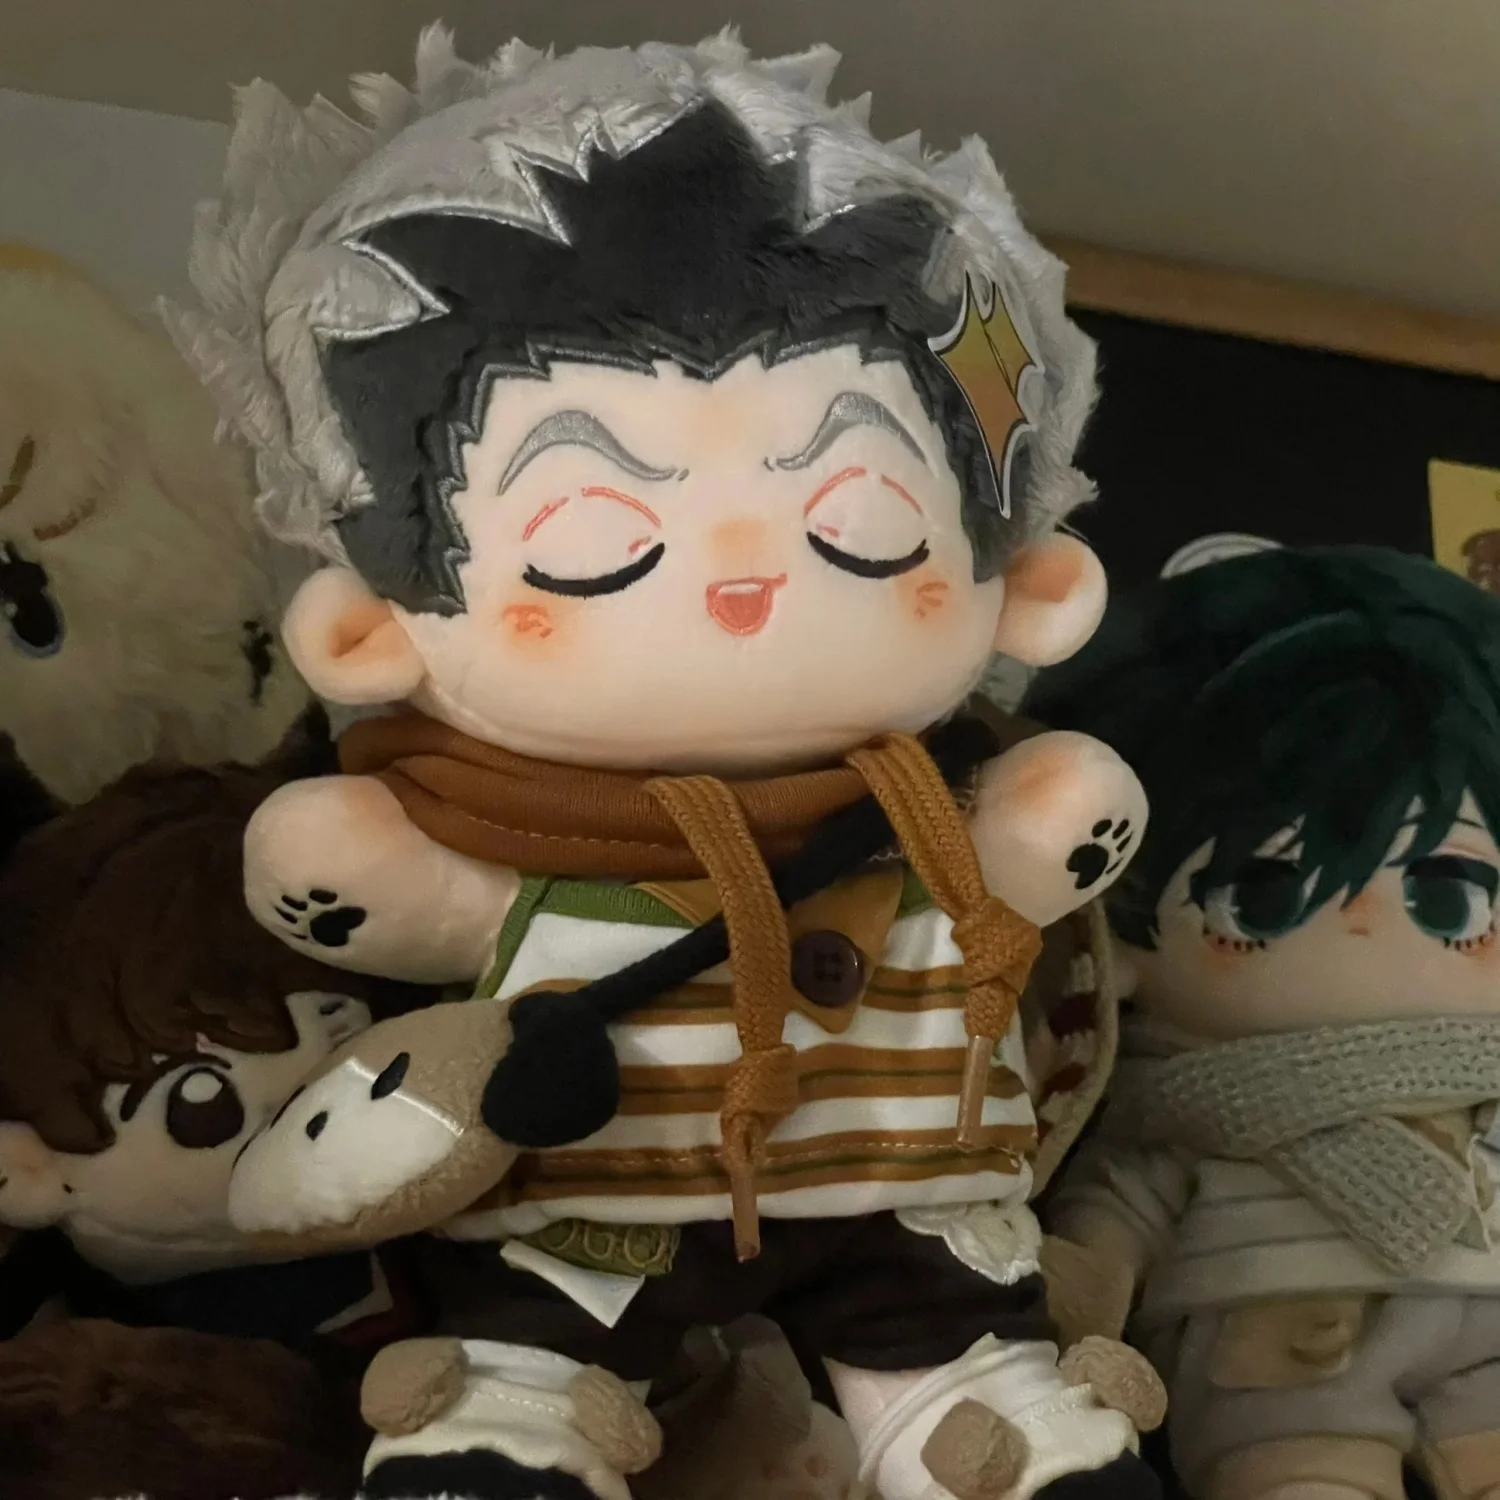 

Kotaro Bokuto Аниме Haikyuu! Милый монстр красивые плюшевые набивные куклы наряд плюшевая подушка талисман косплей подарок 20 см